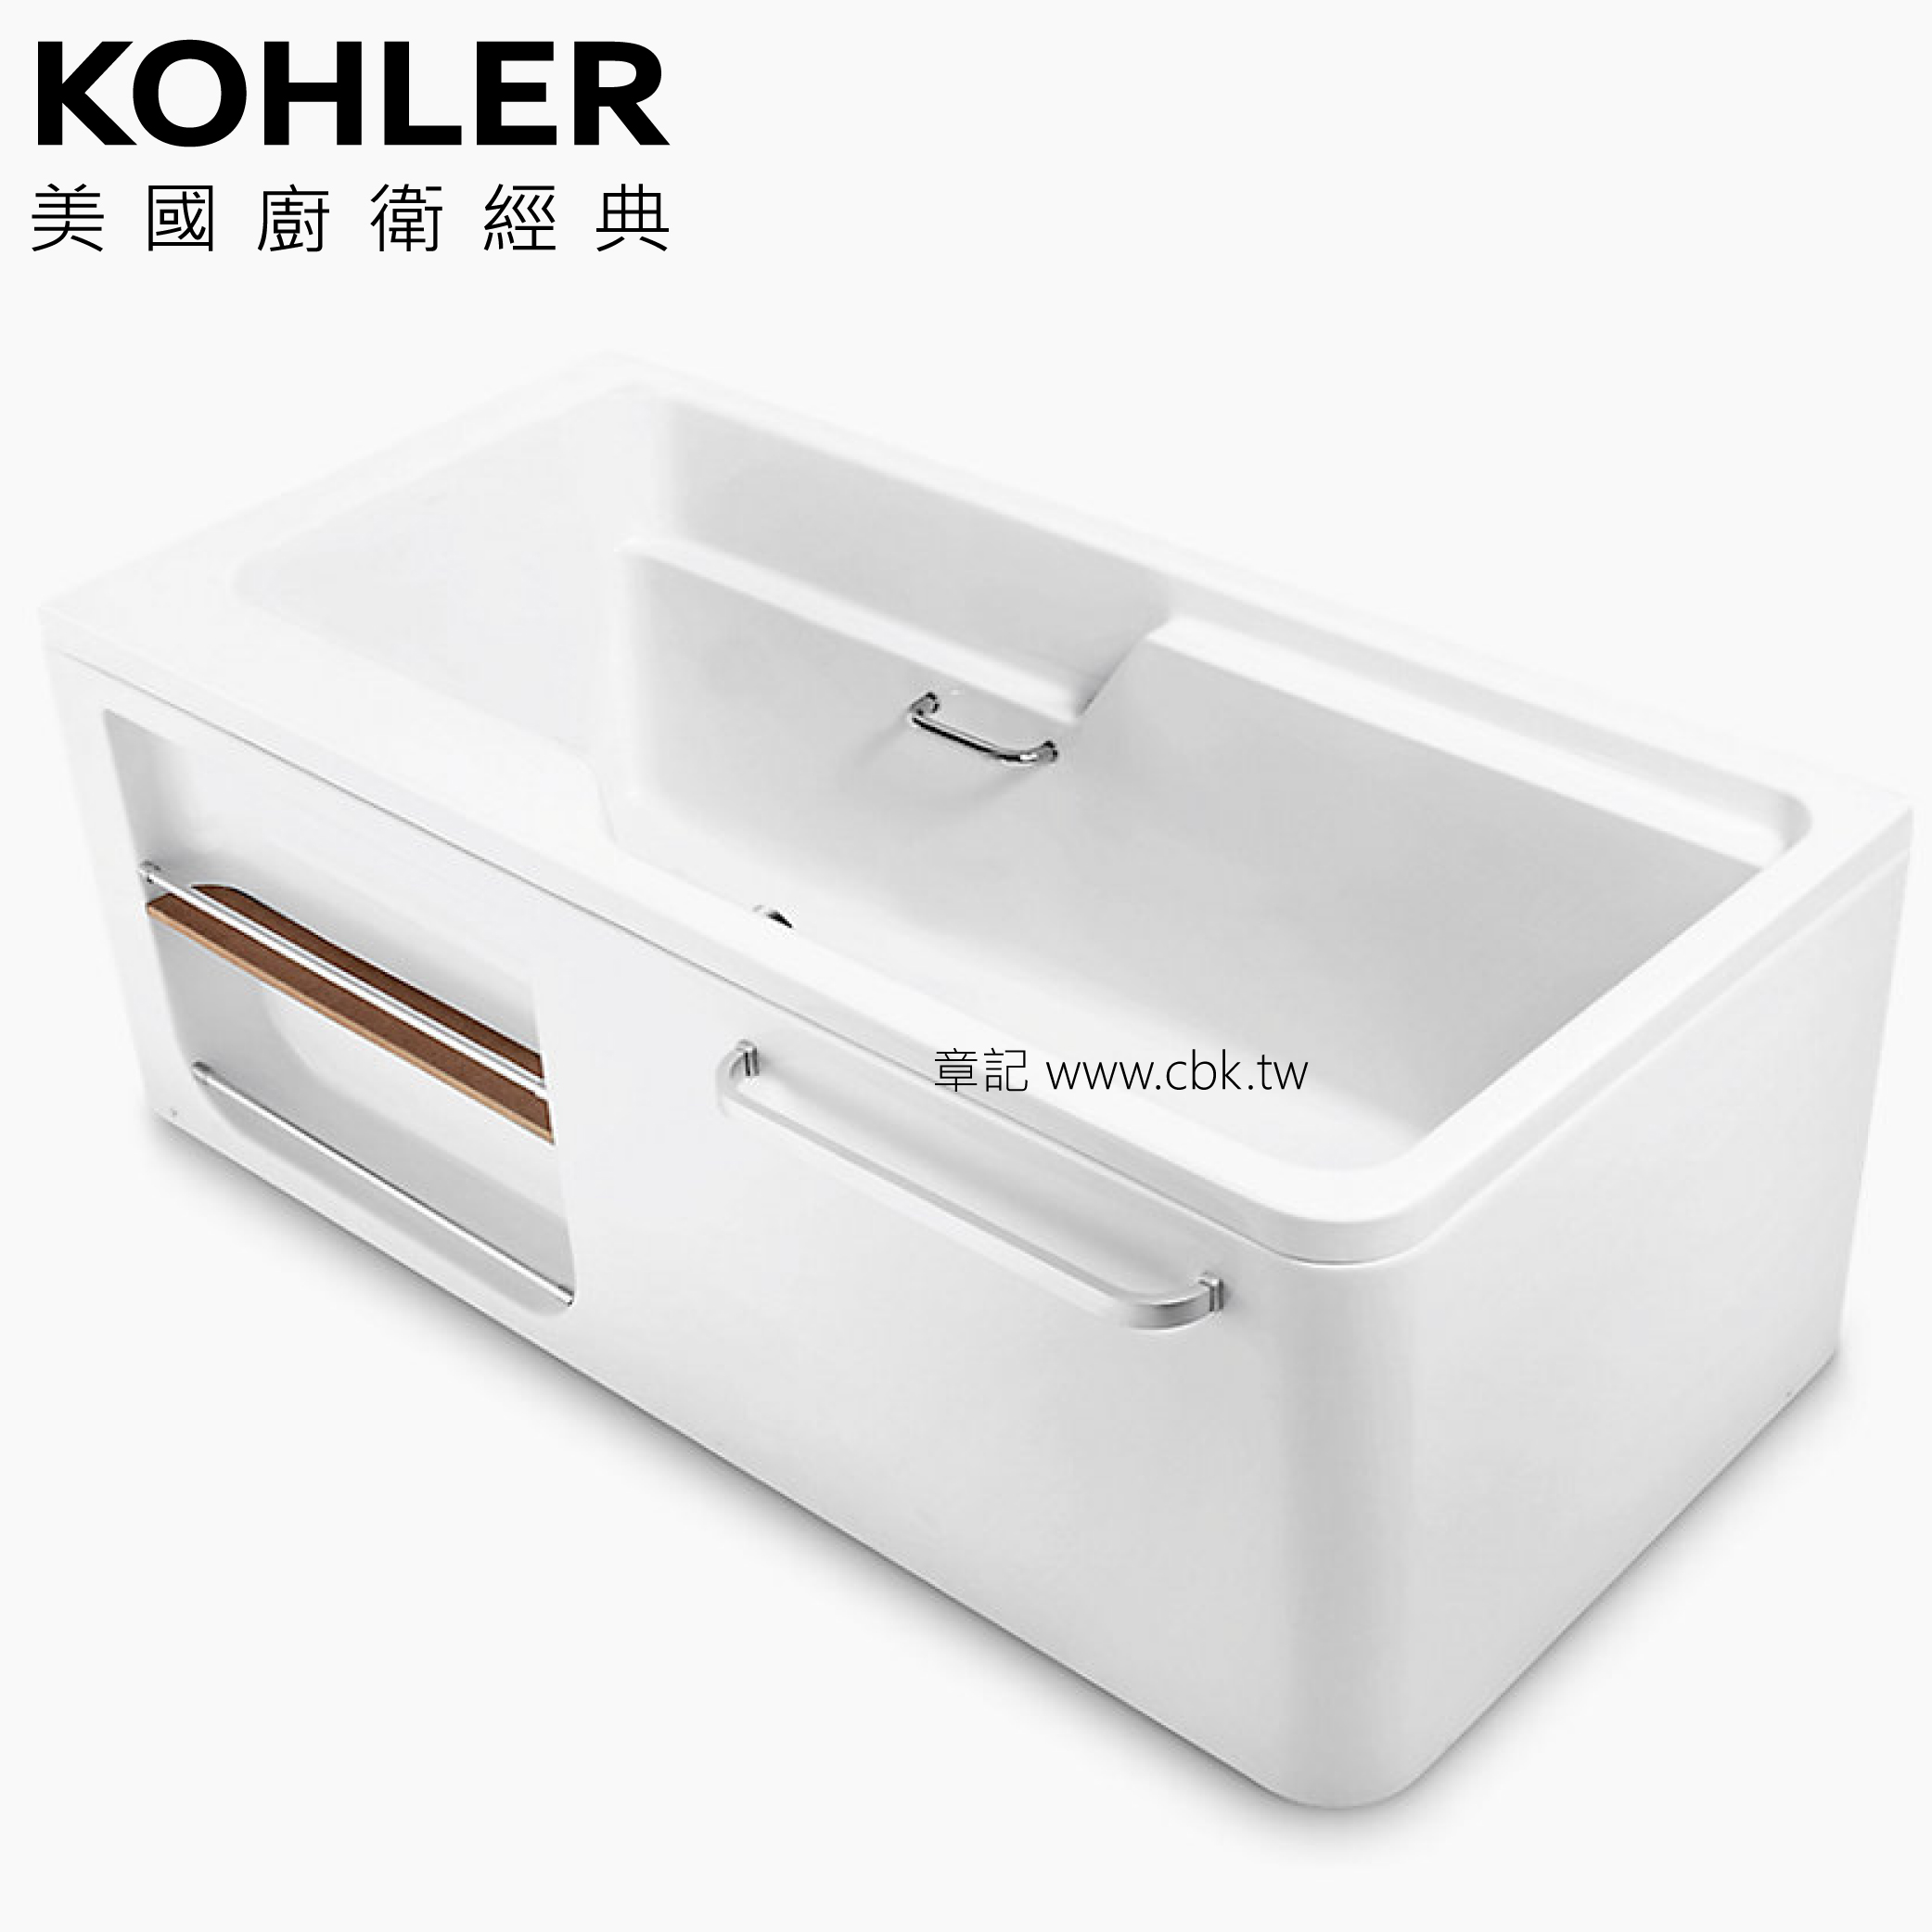 KOHLER ALEUTIAN 壓克力整體化浴缸(130cm) K-99013T-0_K-99014T-0  |浴缸|浴缸